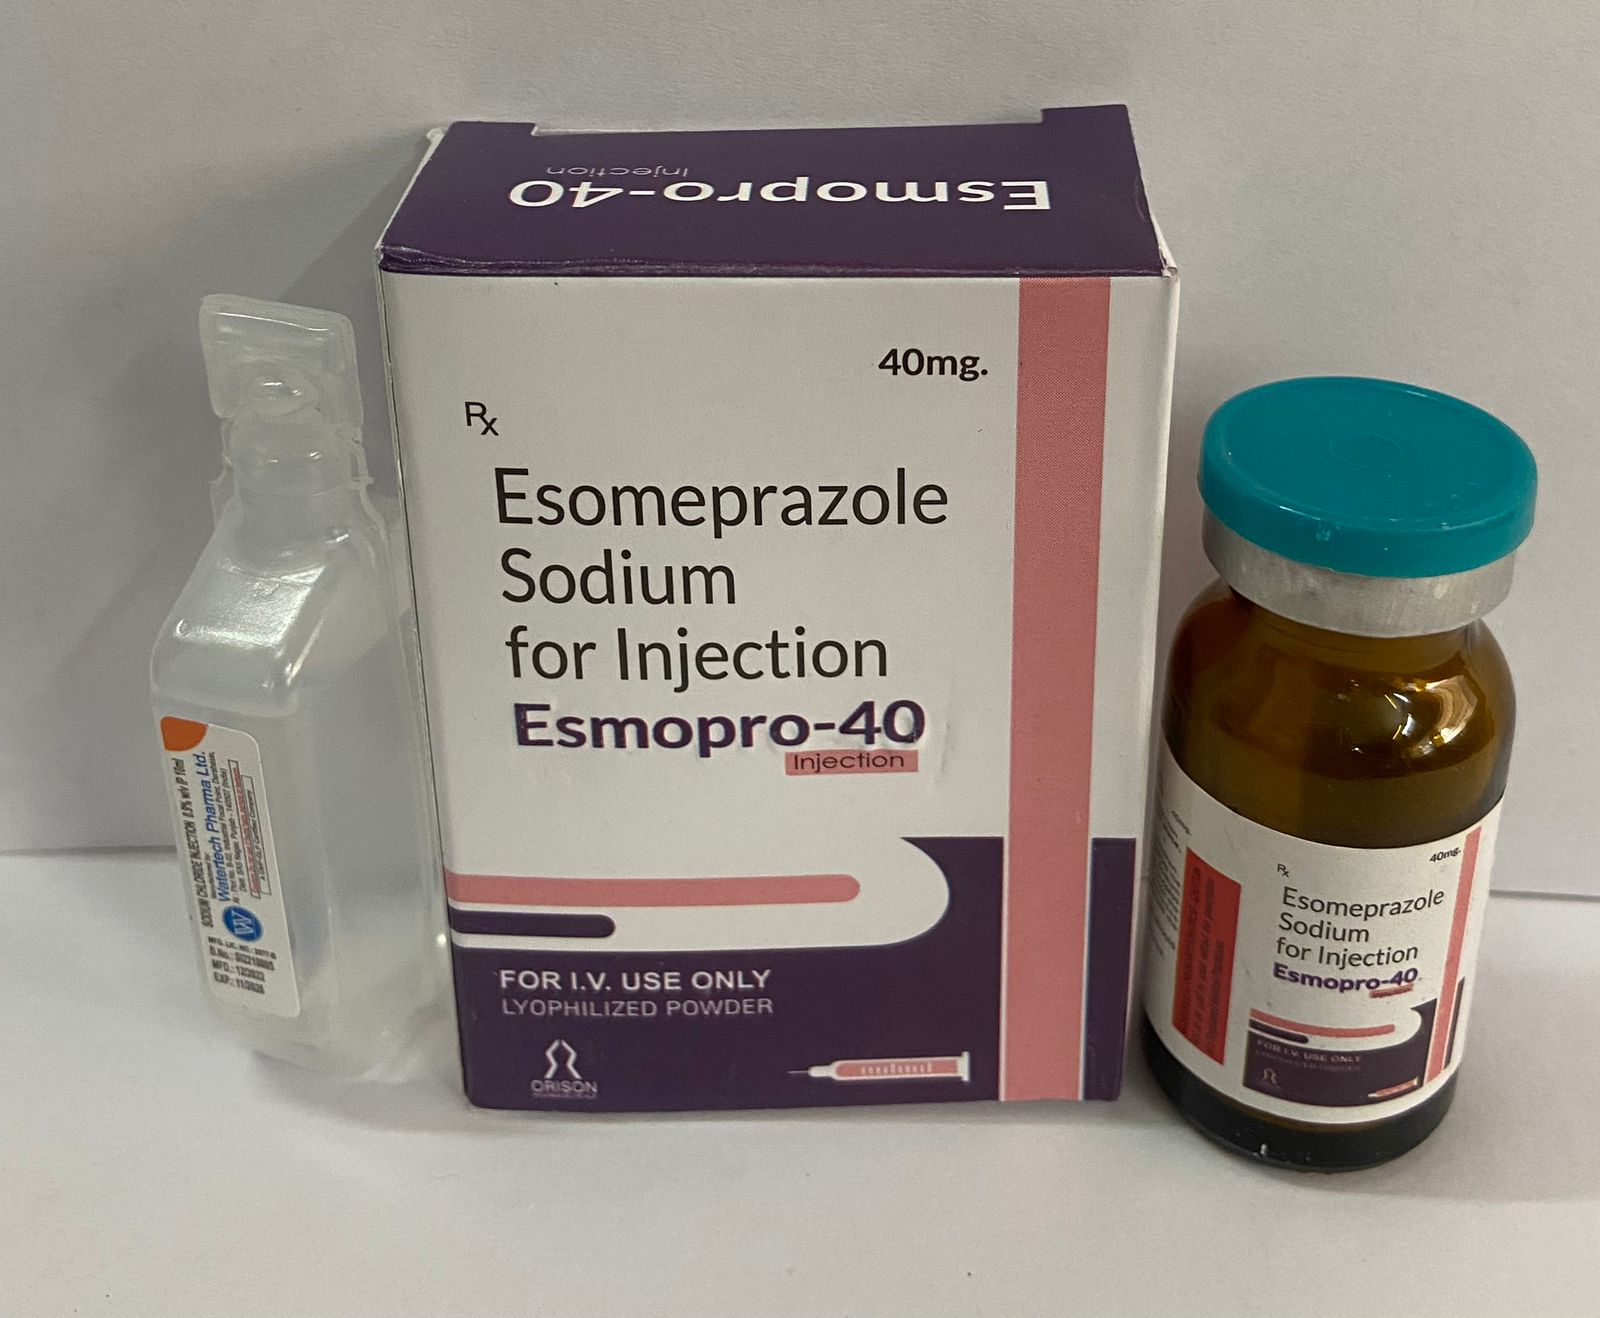 Product Name: Esomeprazole Sodium For Injection, Compositions of Esomeprazole Sodium For Injection are Esomeprazole Sodium For Injection - Orison Pharmaceuticals